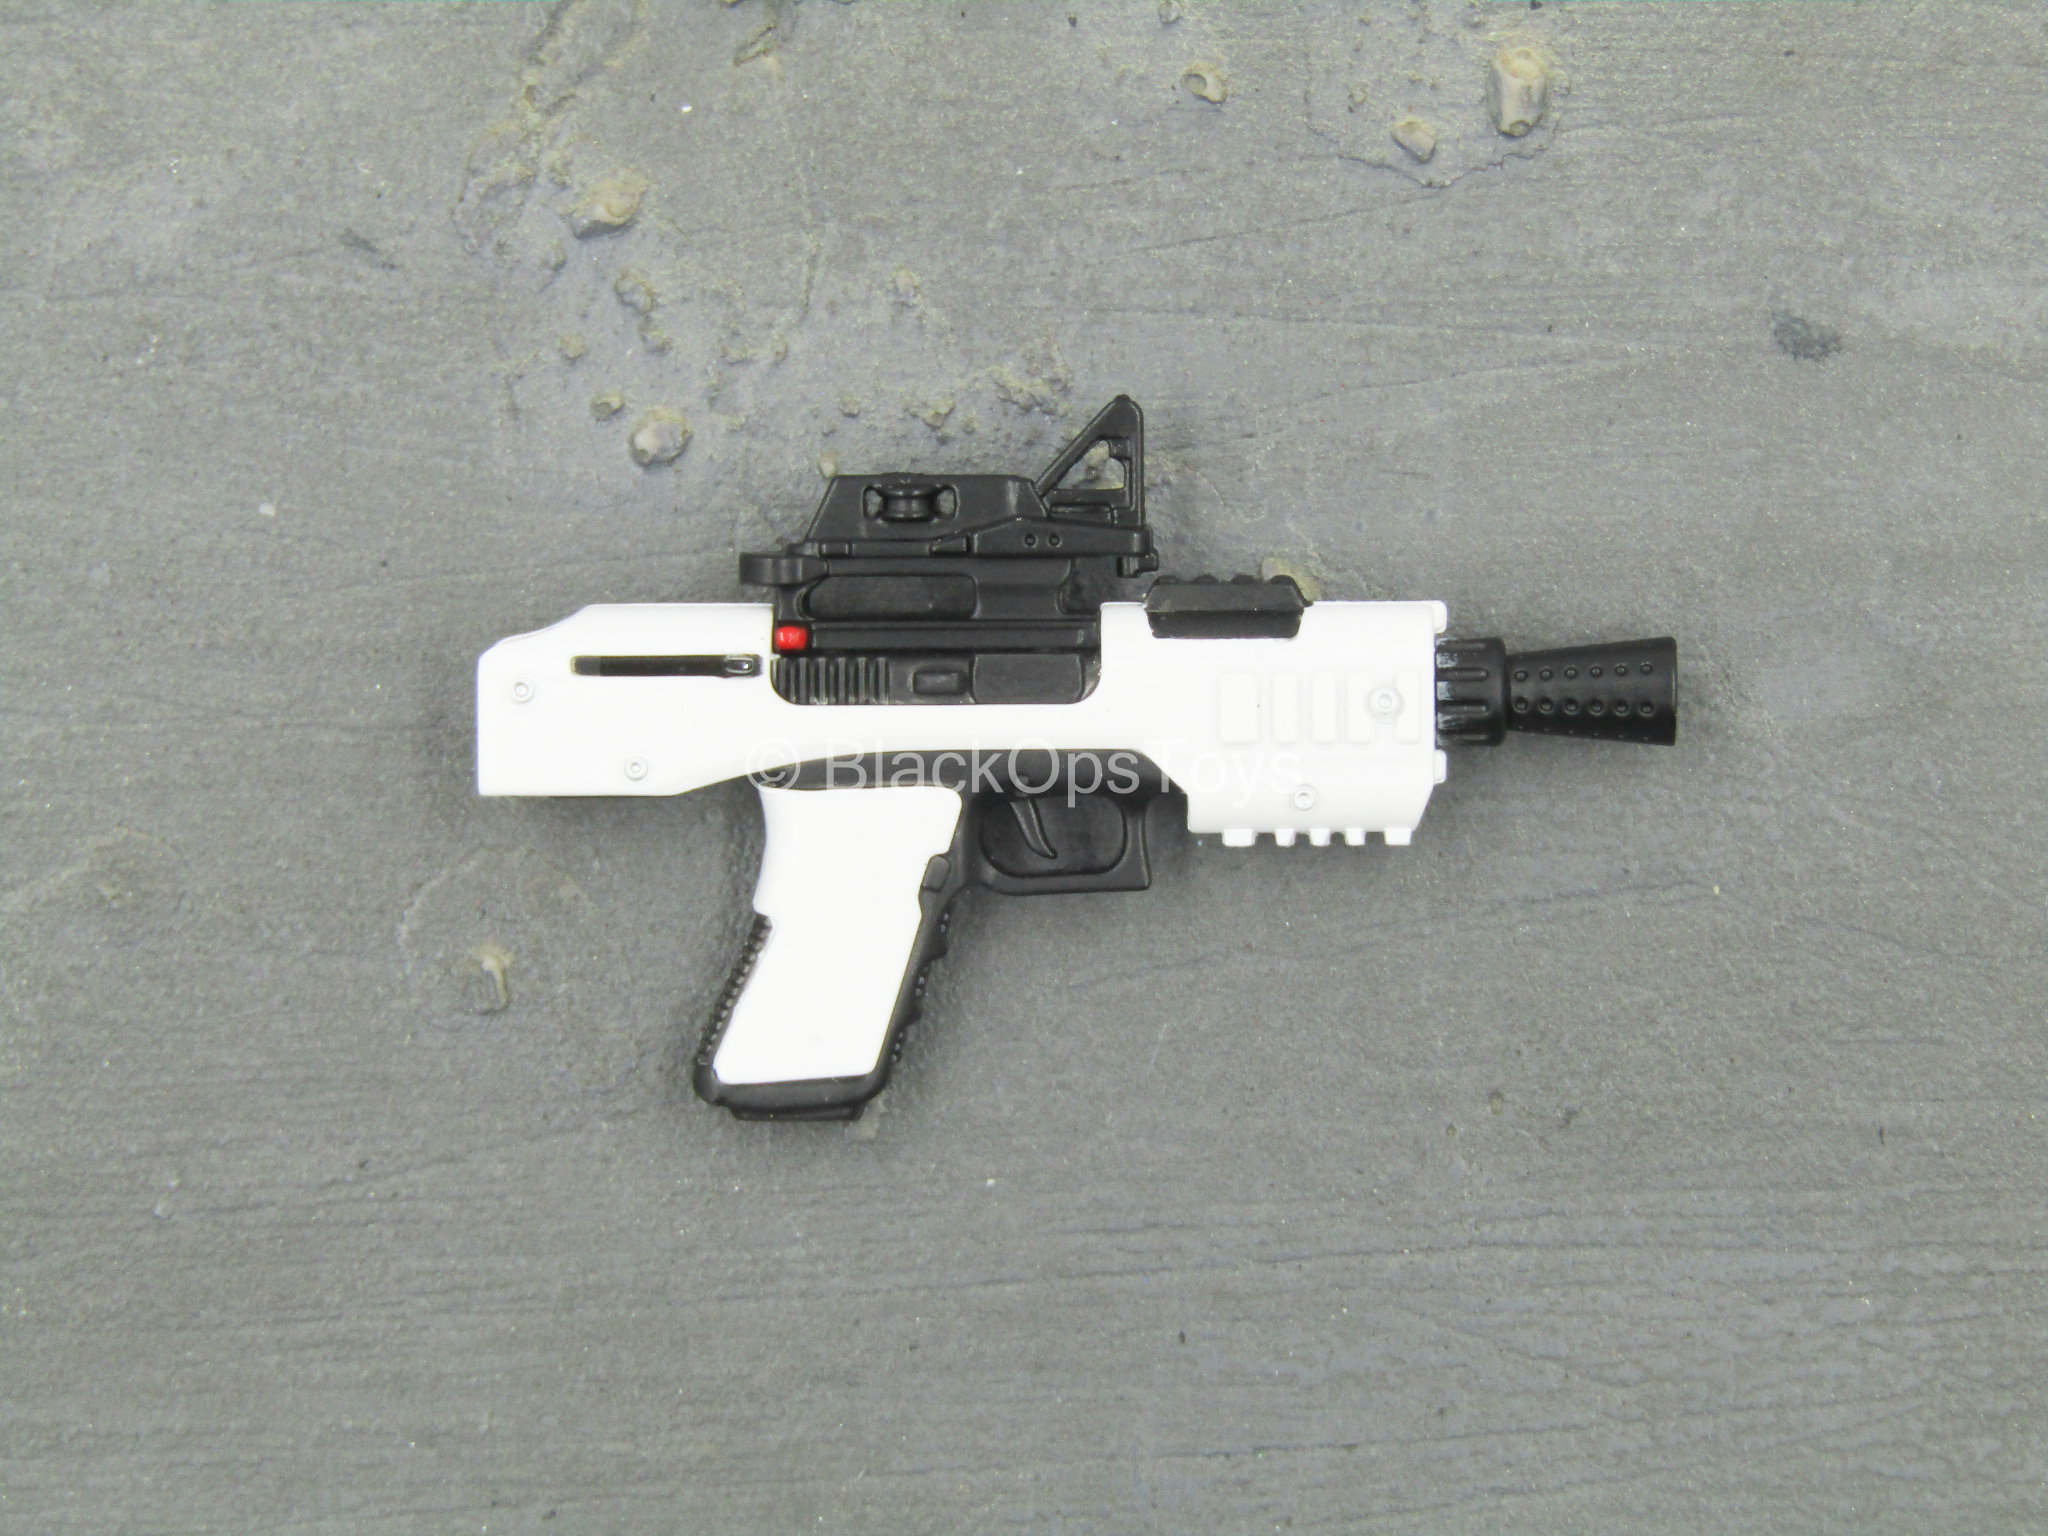 STAR WARS - Stormtrooper - SE-44C Blaster Pistol – BlackOpsToys